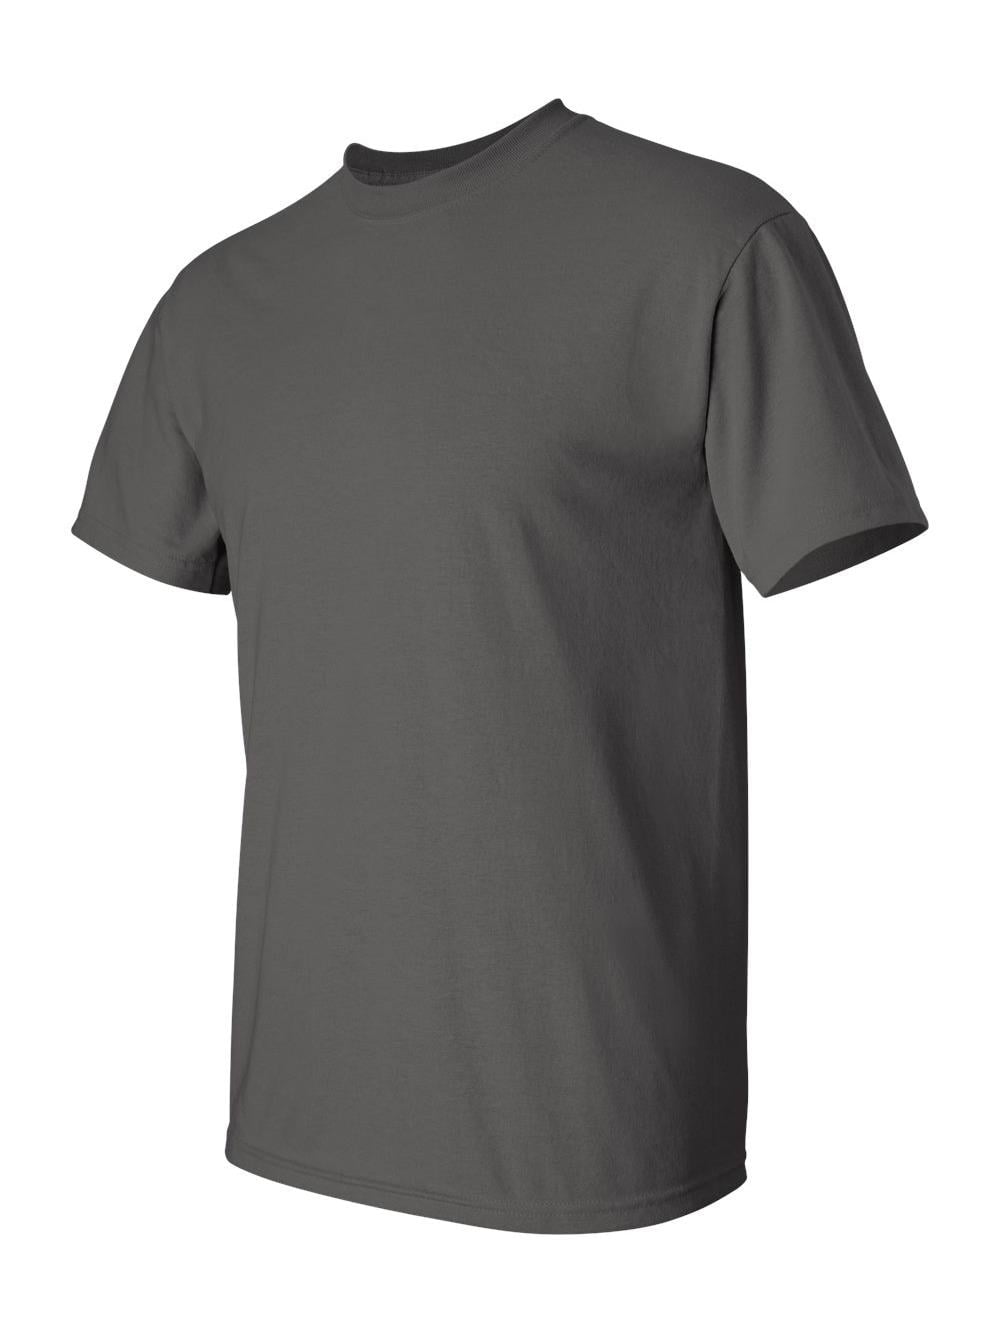 Gildan - Ultra Cotton Tall T-Shirt - 2000T - Charcoal - Size: 2XLT ...